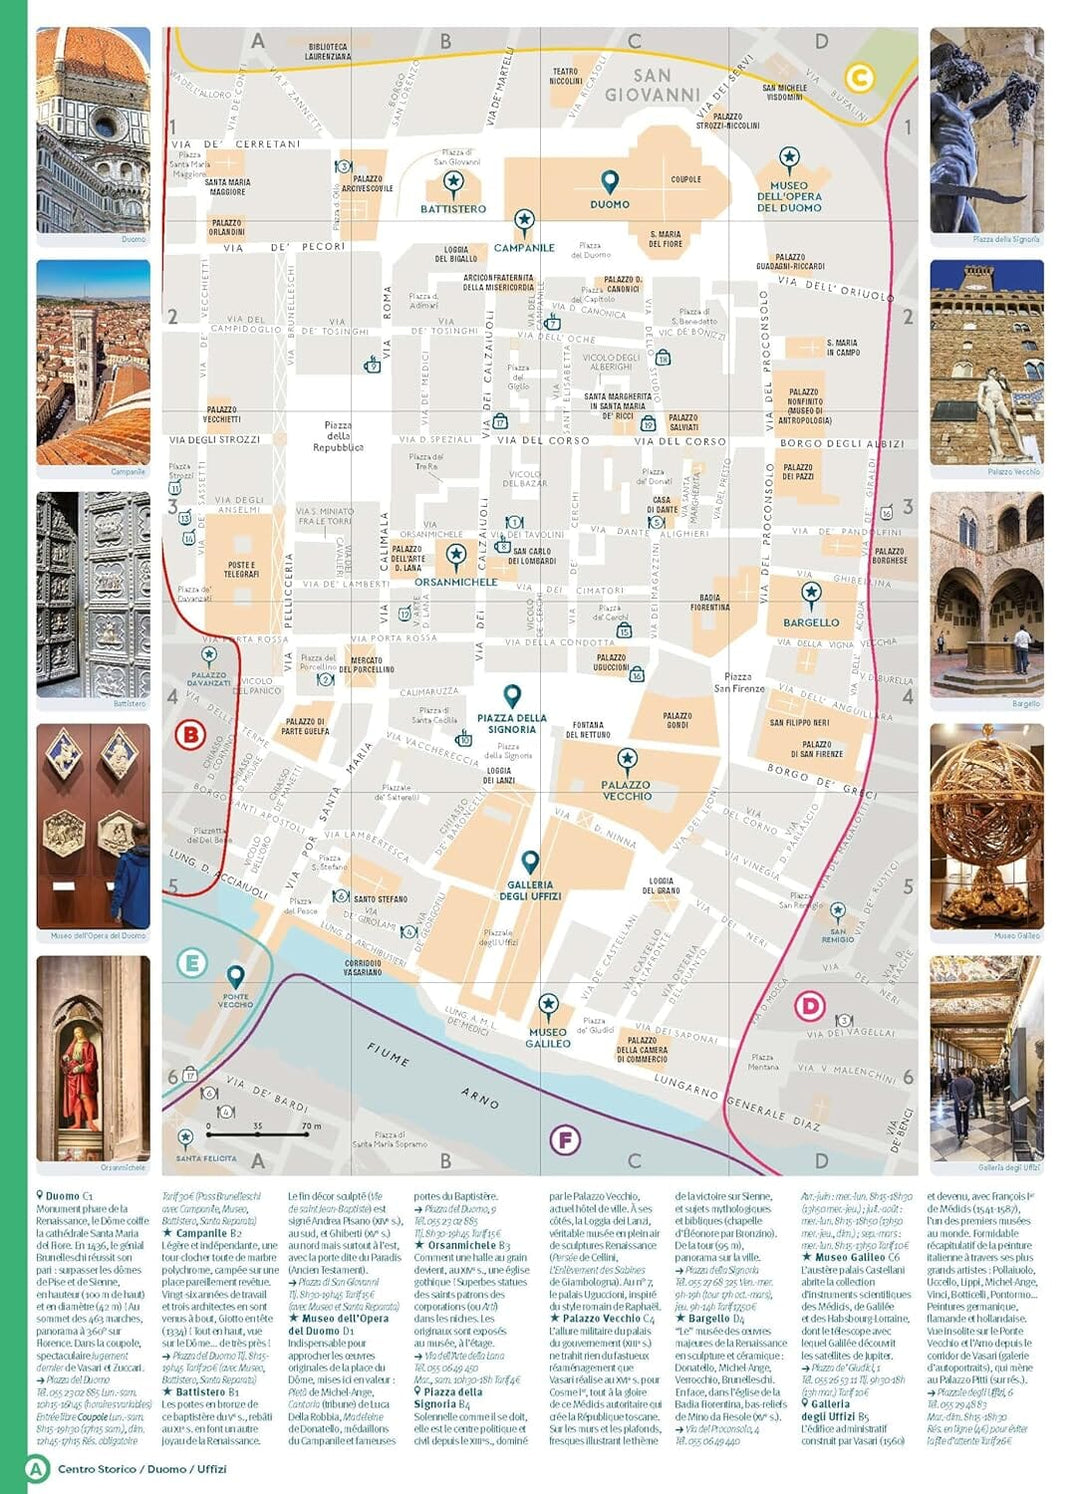 Plan détaillé - Florence - Édition 2024 | Cartoville carte pliée Gallimard 